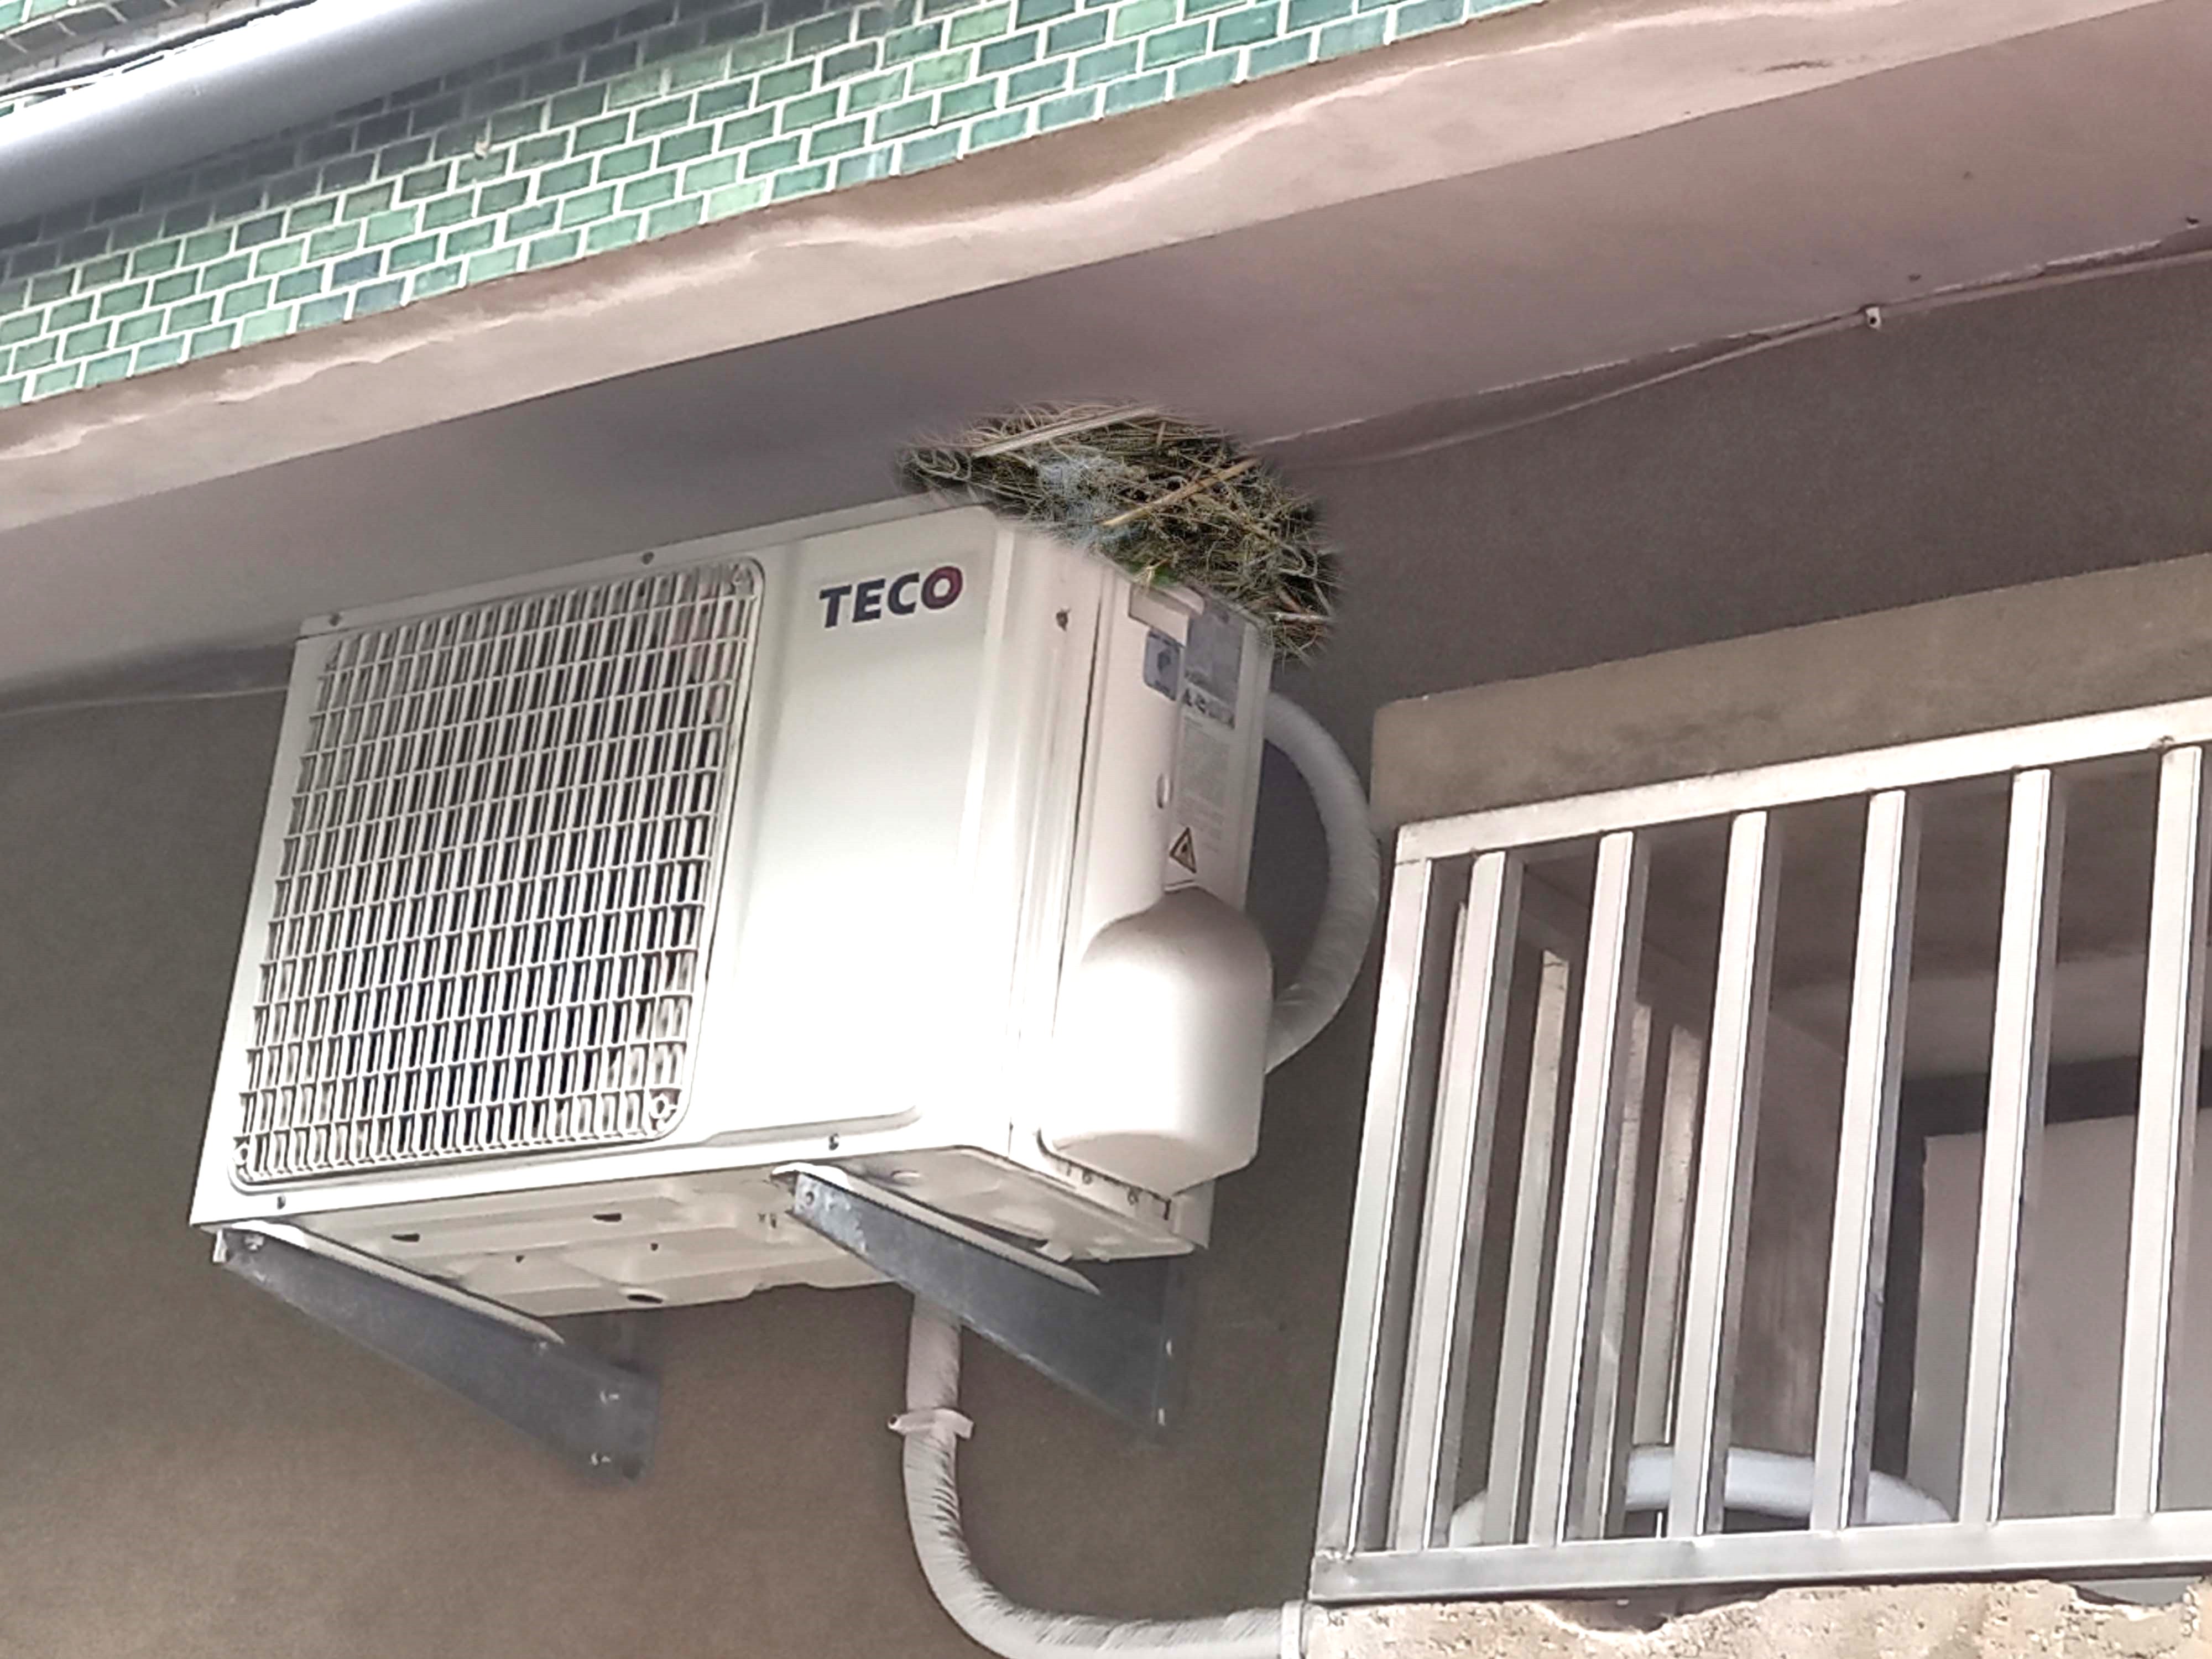 住家冷氣機或屋簷下方若有鳥築巢，應適時移除。(圖/嘉基提供)